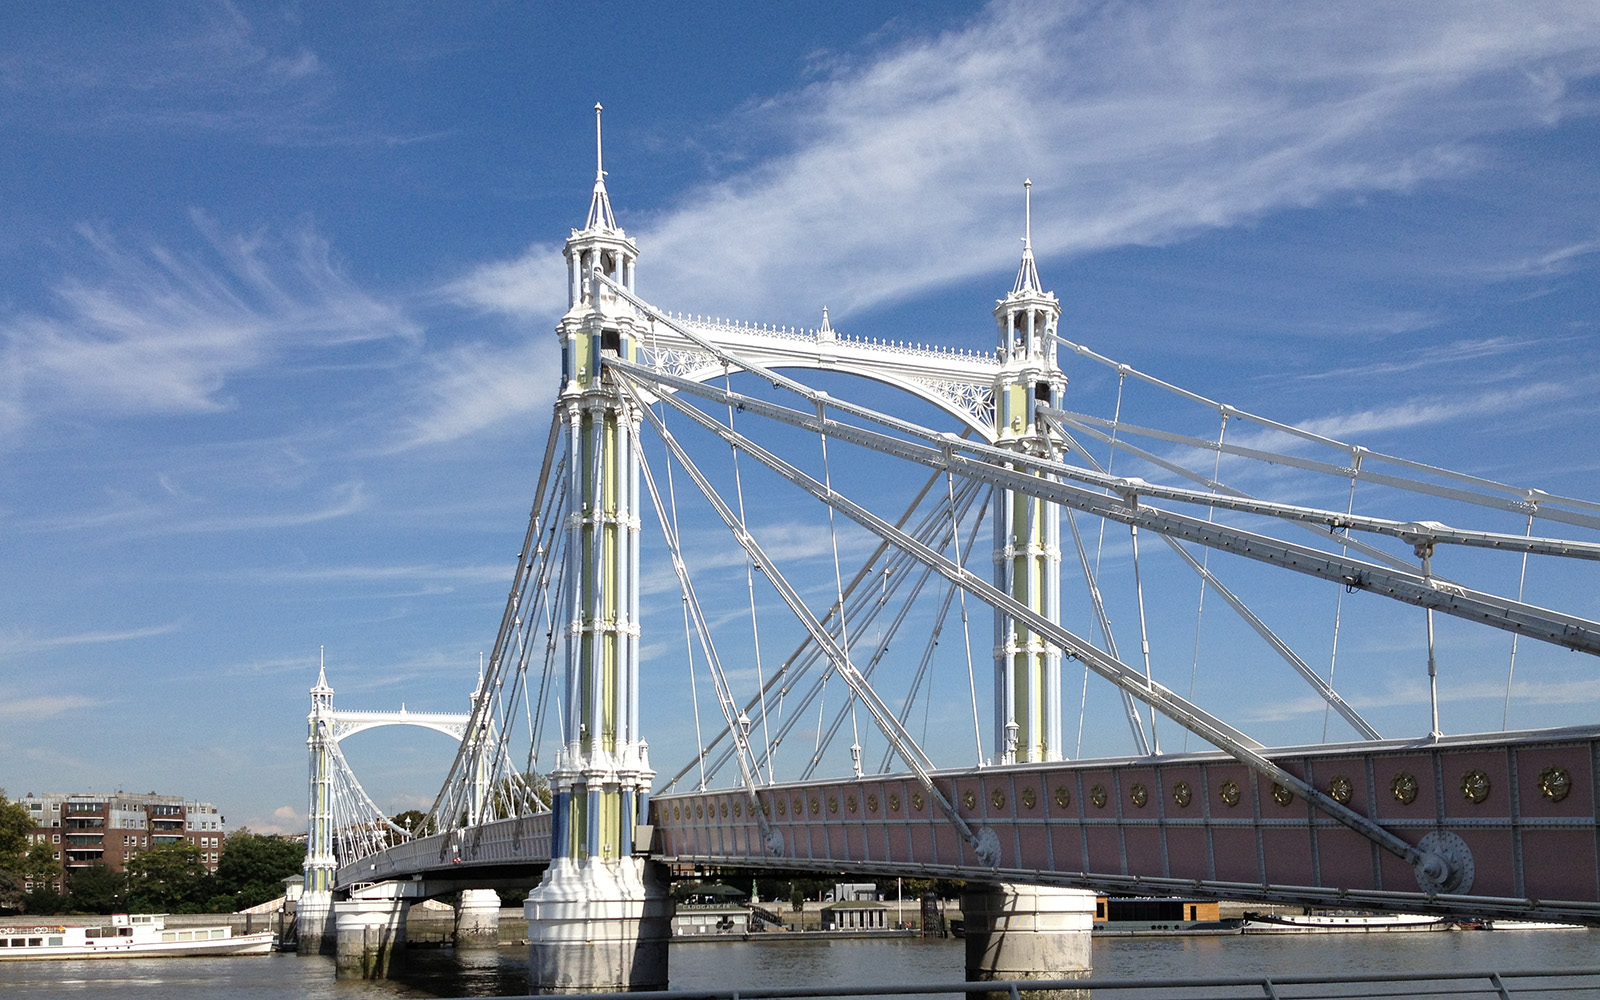 Albert Bridge 11 September 2015